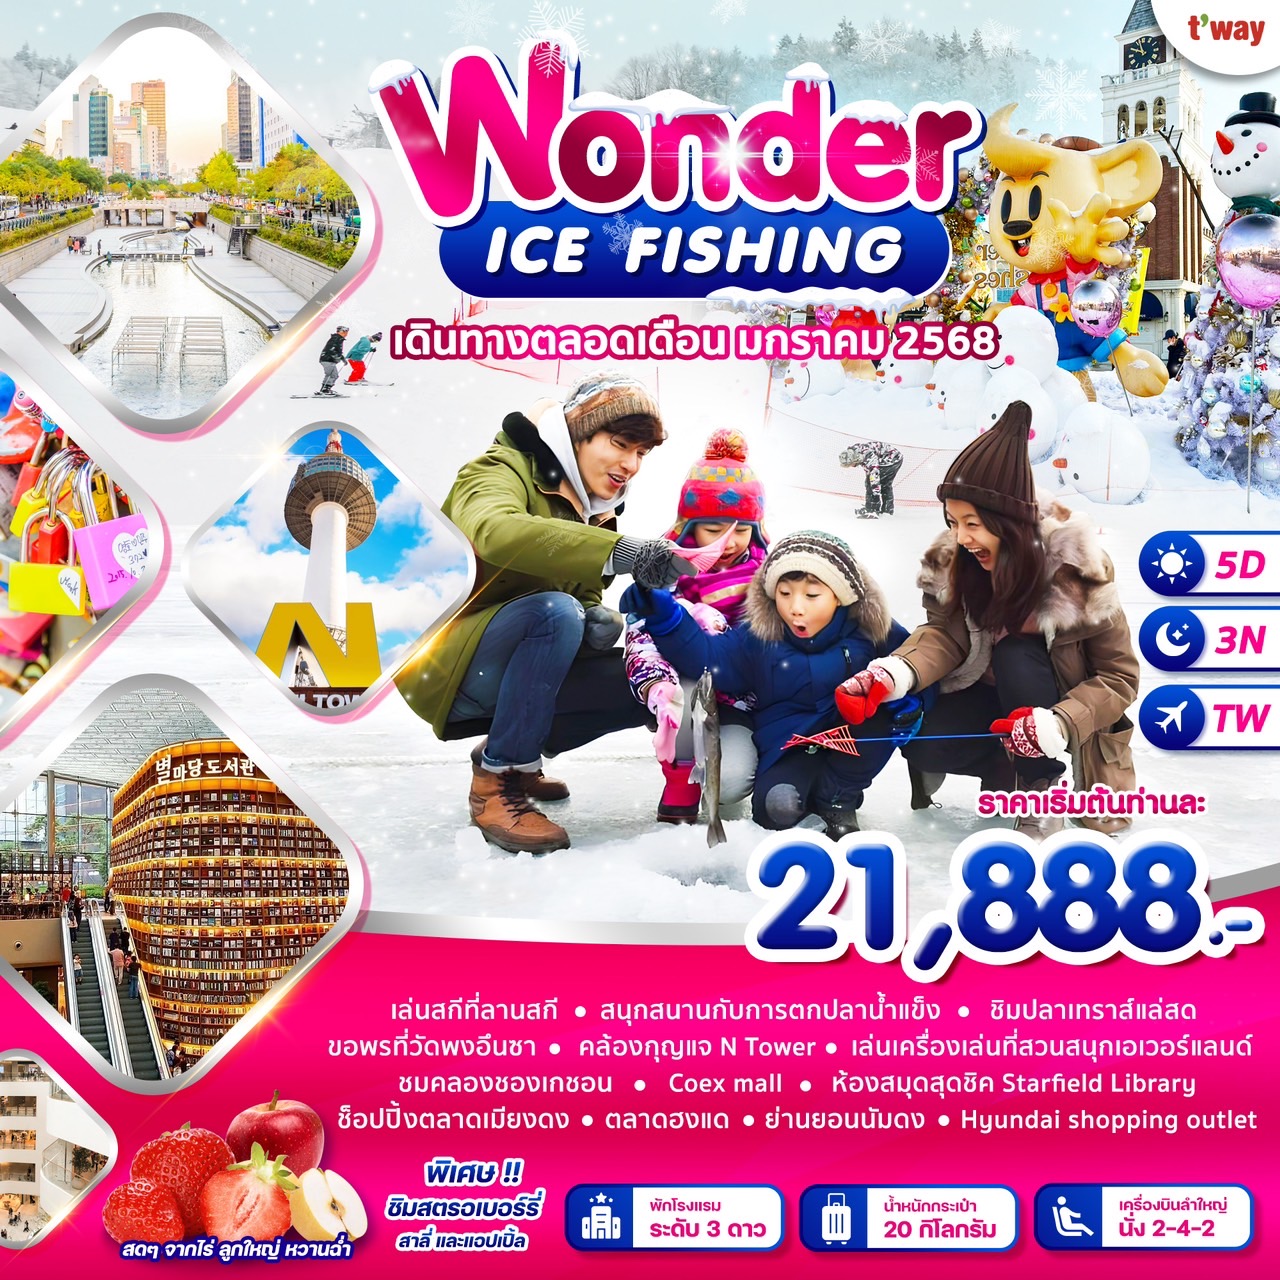 ทัวร์เกาหลี Wonder Ice Fishing 5วัน 3คืน (TW)